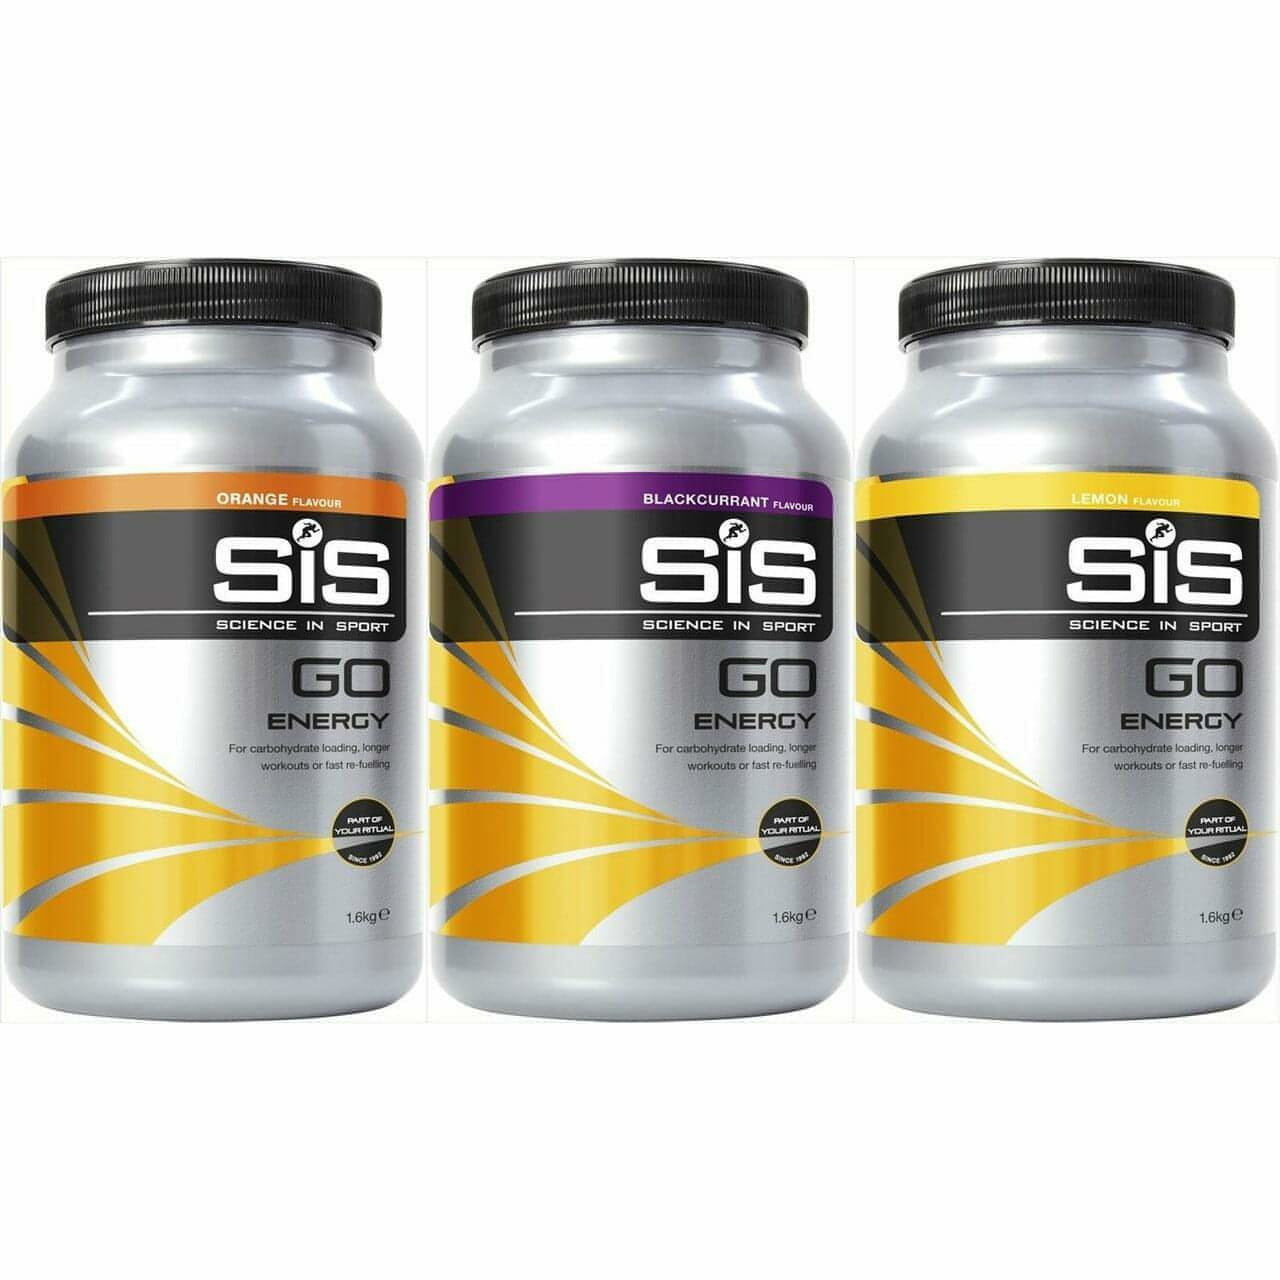 SiS GO Energy Drink Powder 1.6kg - Start Fitness